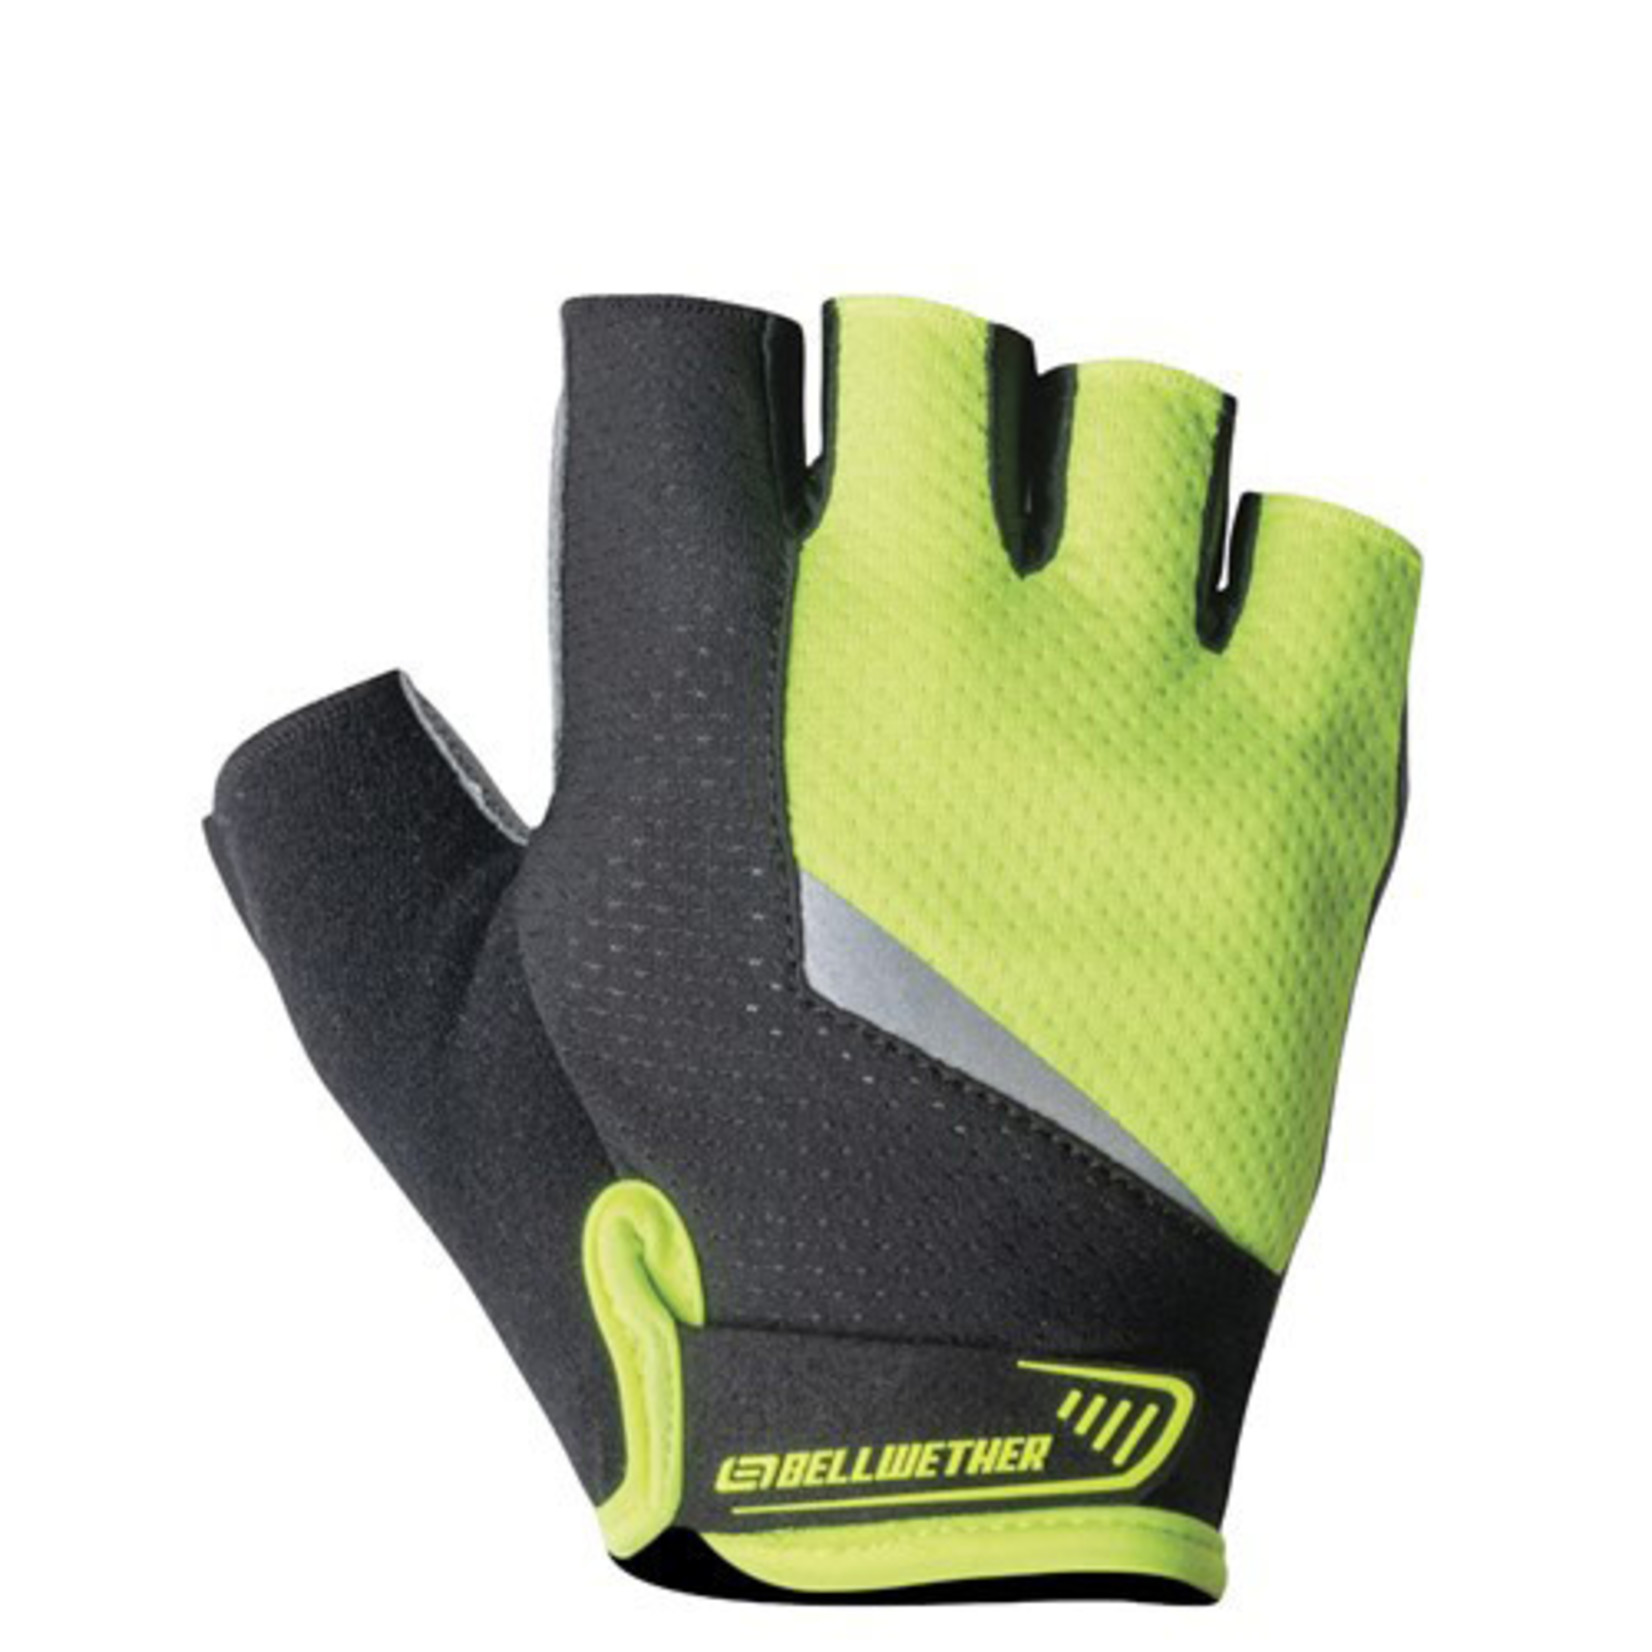 Bellwether Bellwether Cycling/Bike Microfibre Thumb Gloves - Men's Ergo Gel Gloves - Hi-Vis